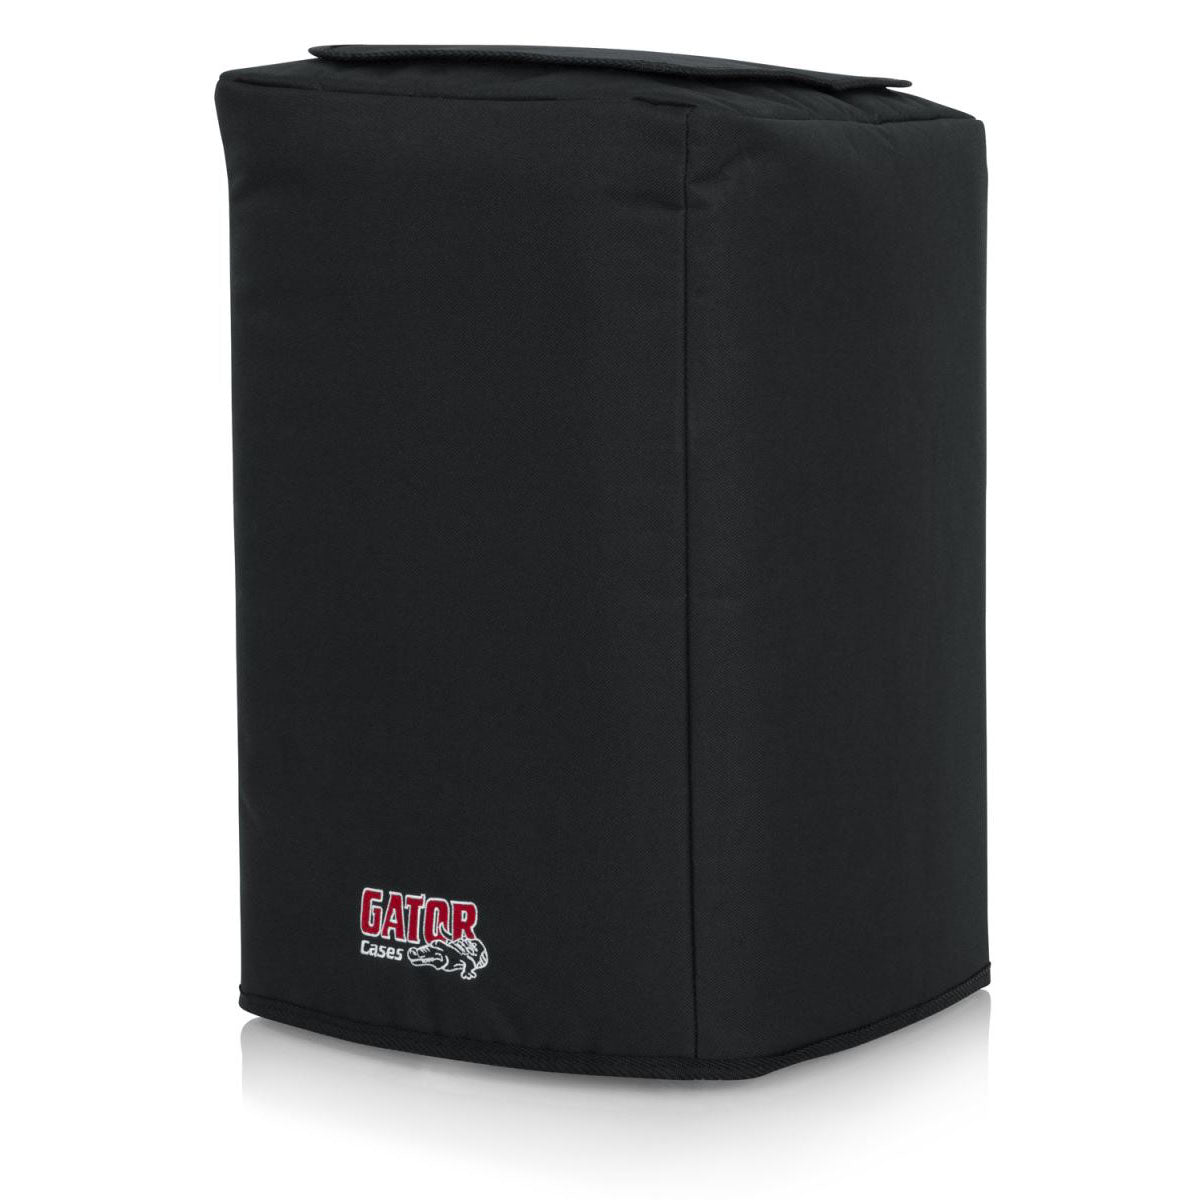 Gator GPA-CVR8 Nylon Speaker Cover for Compact 8" Speaker Cabinets